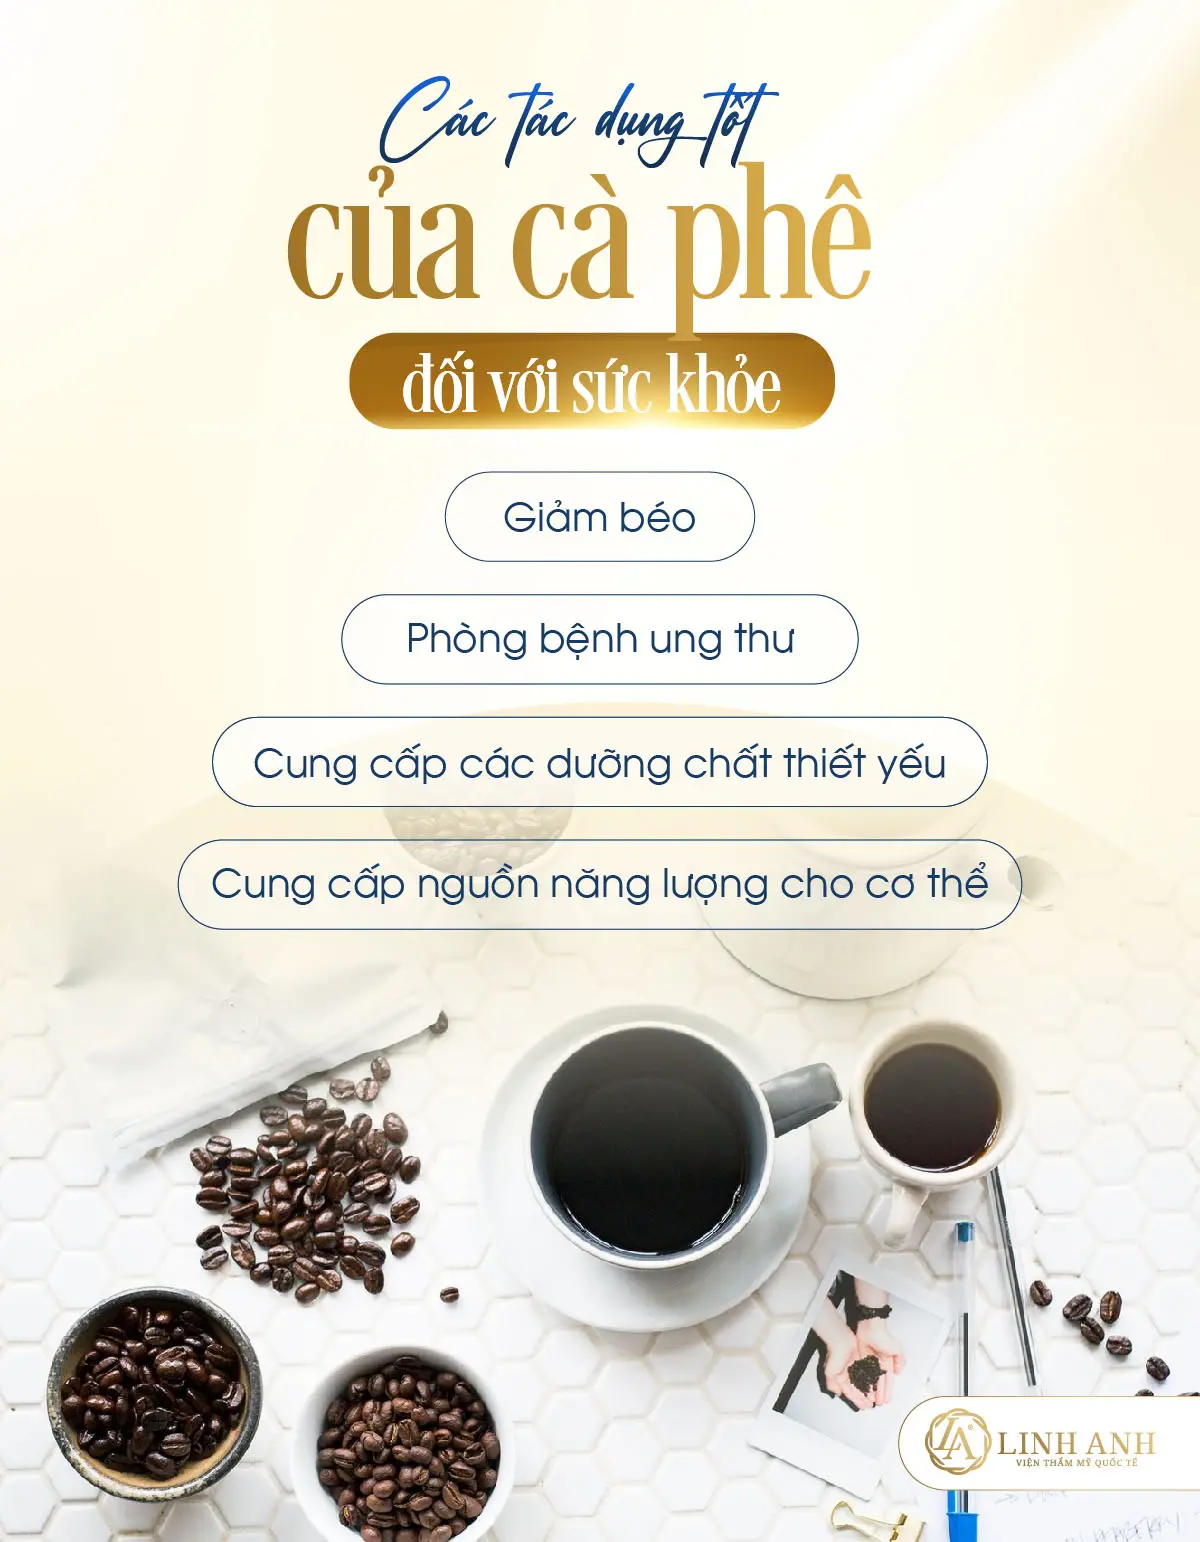 uống cafe có nổi mụn không - Viện thẩm mỹ quốc tế Linh Anh